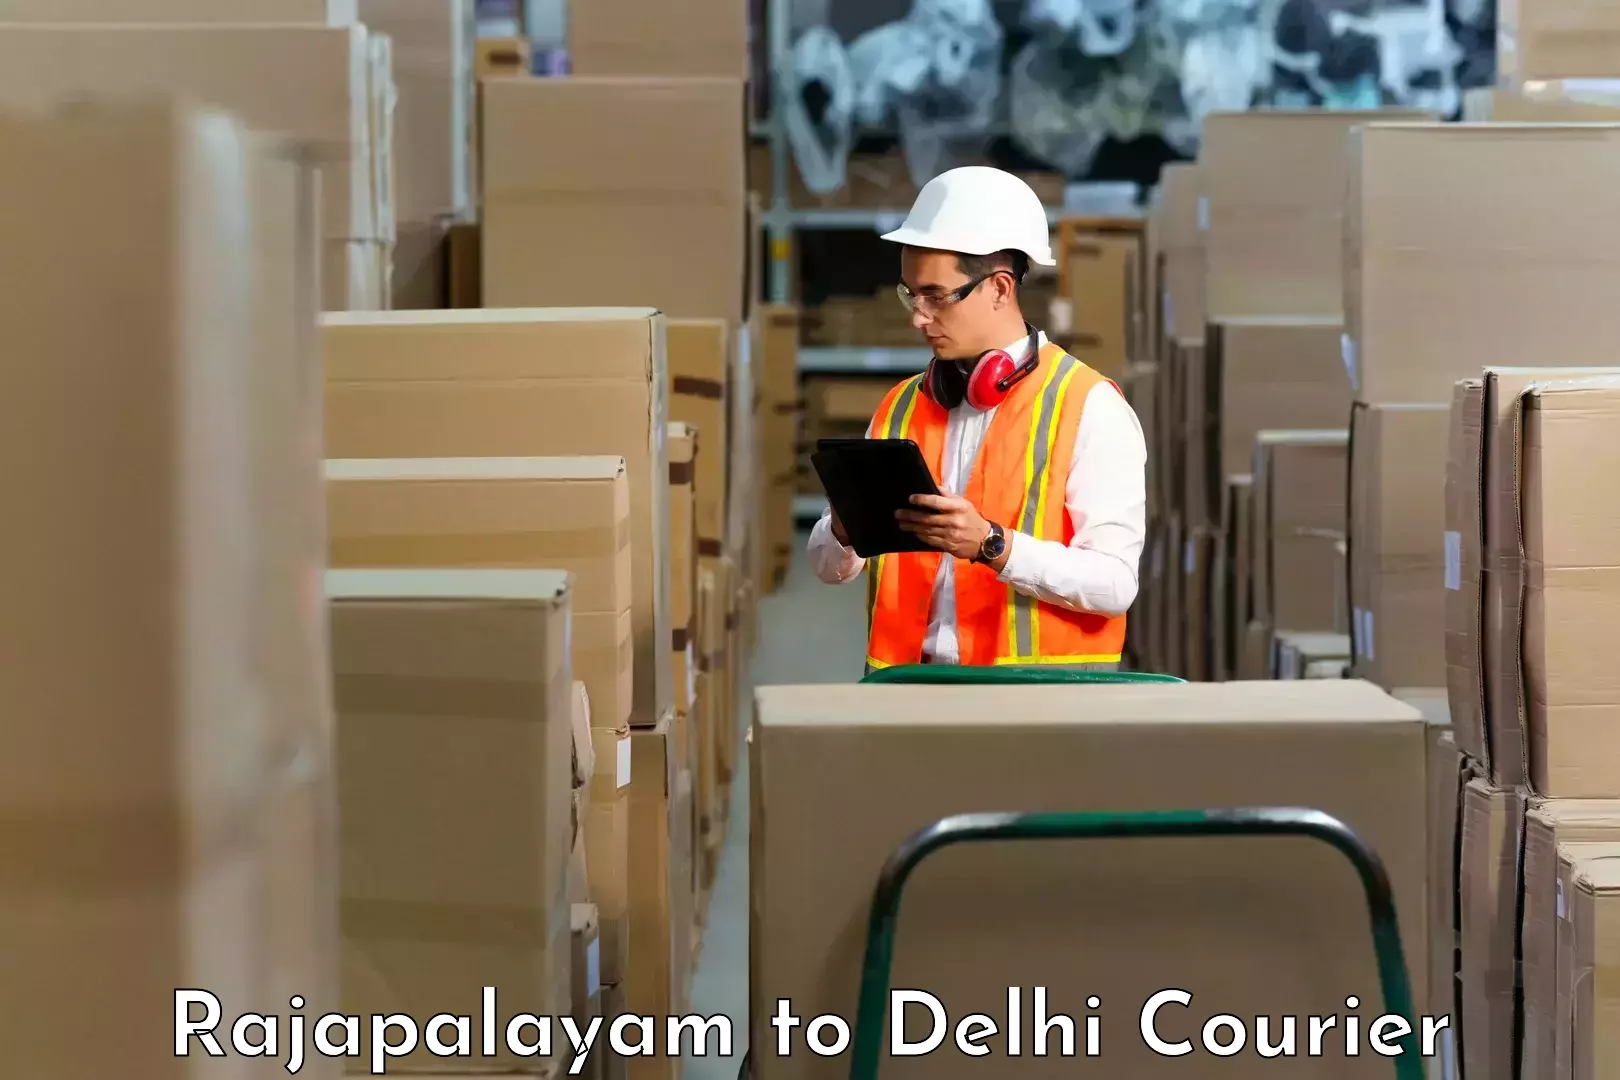 Individual parcel service Rajapalayam to Delhi